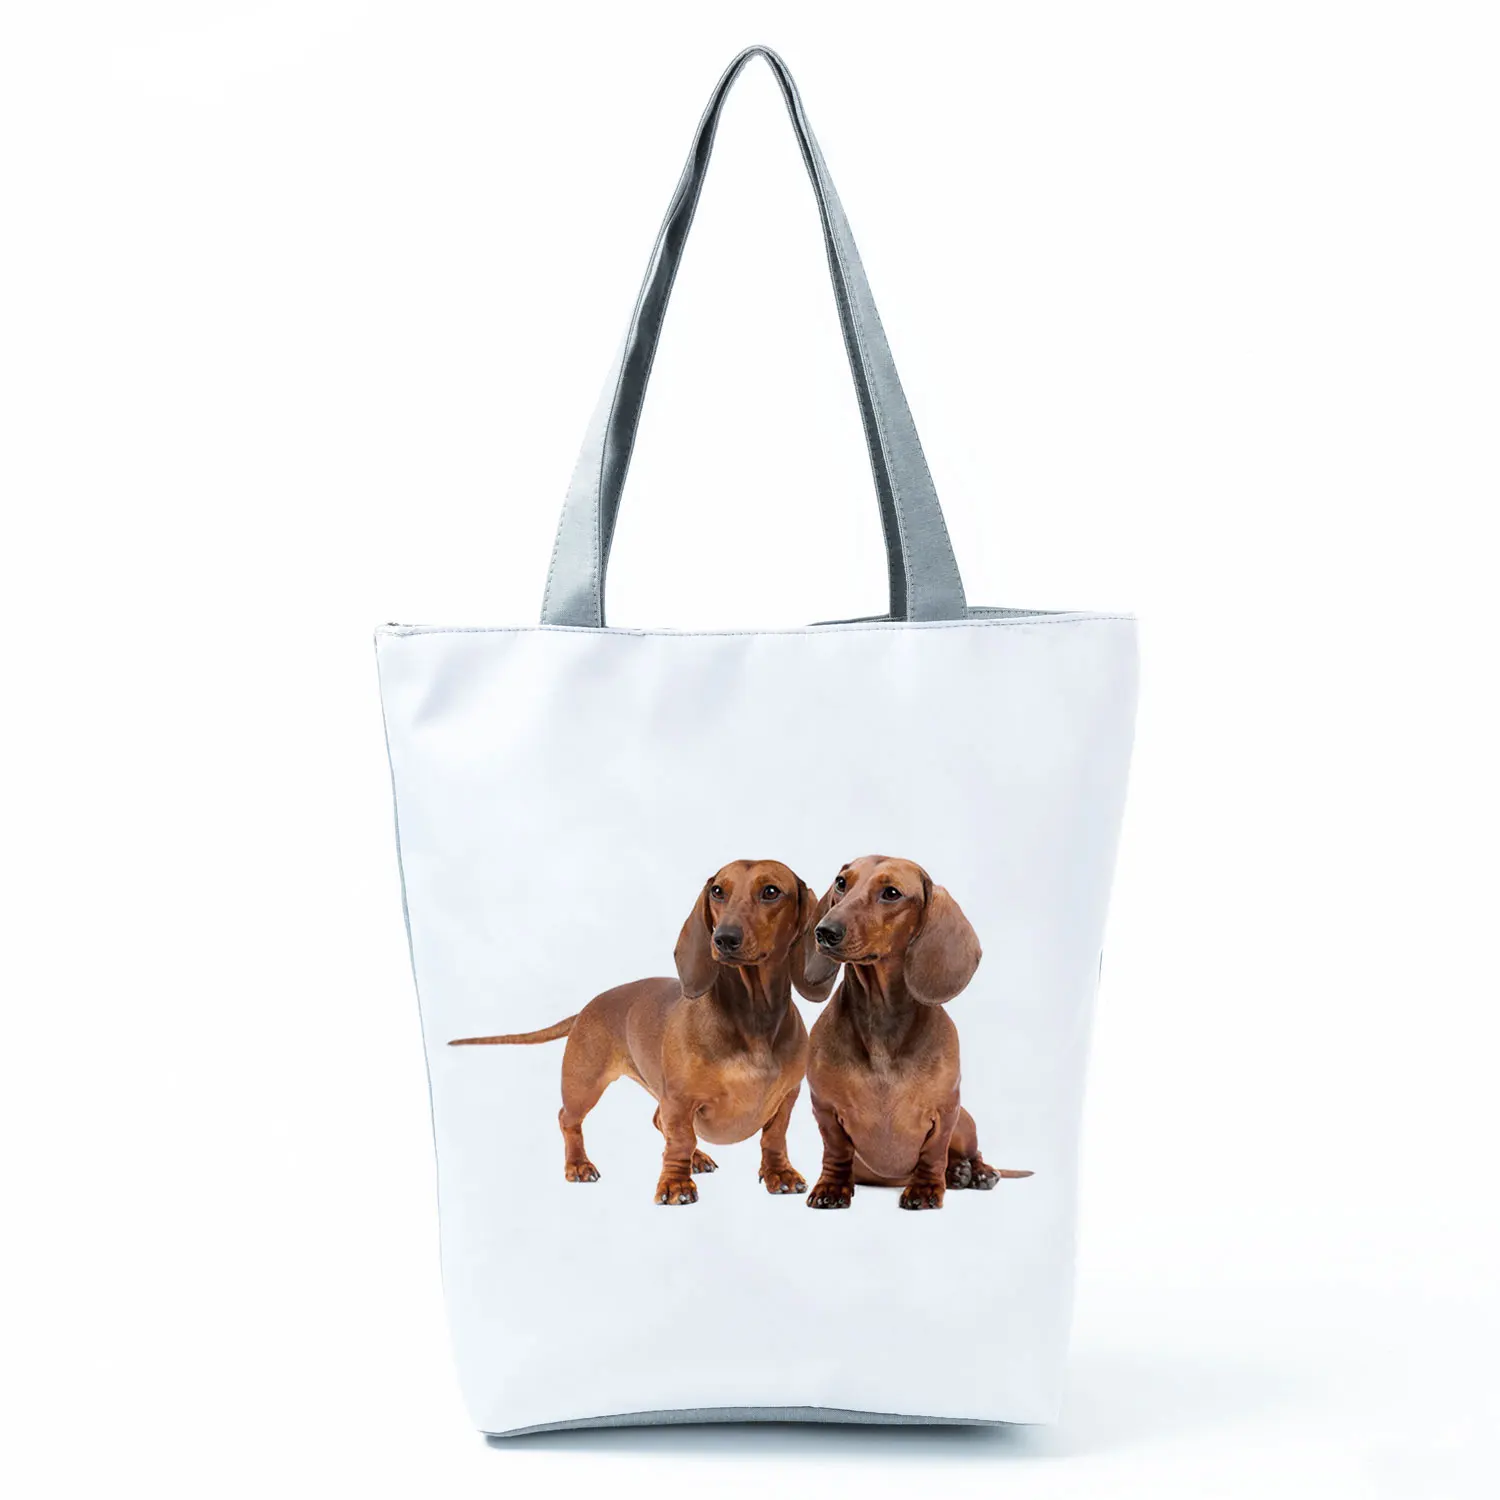 Cute Sausage Dog Printing Harajuku Eco Totes Bag Women Handbag Organize Birthday Party Gifts Reusable Grocery Bag Shopping Bags 